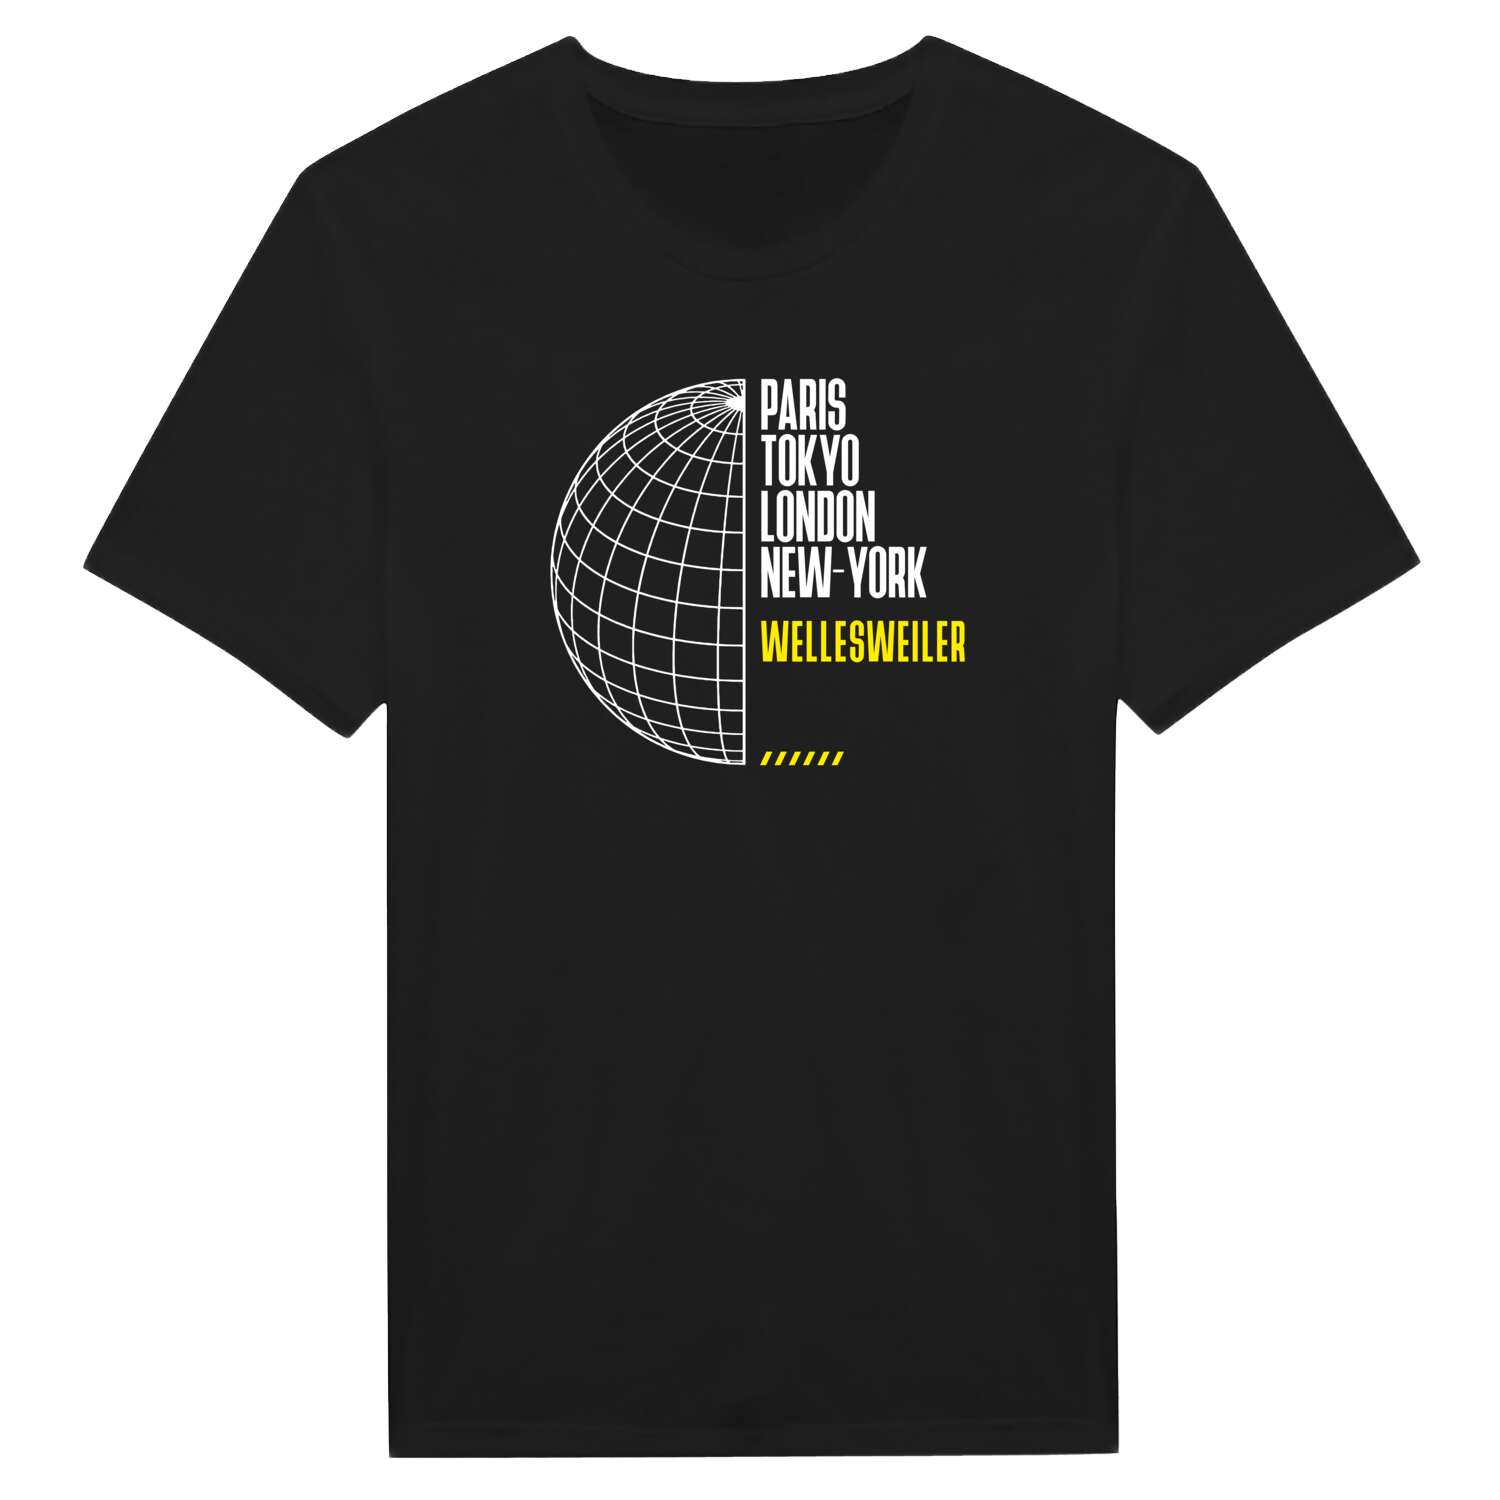 Wellesweiler T-Shirt »Paris Tokyo London«